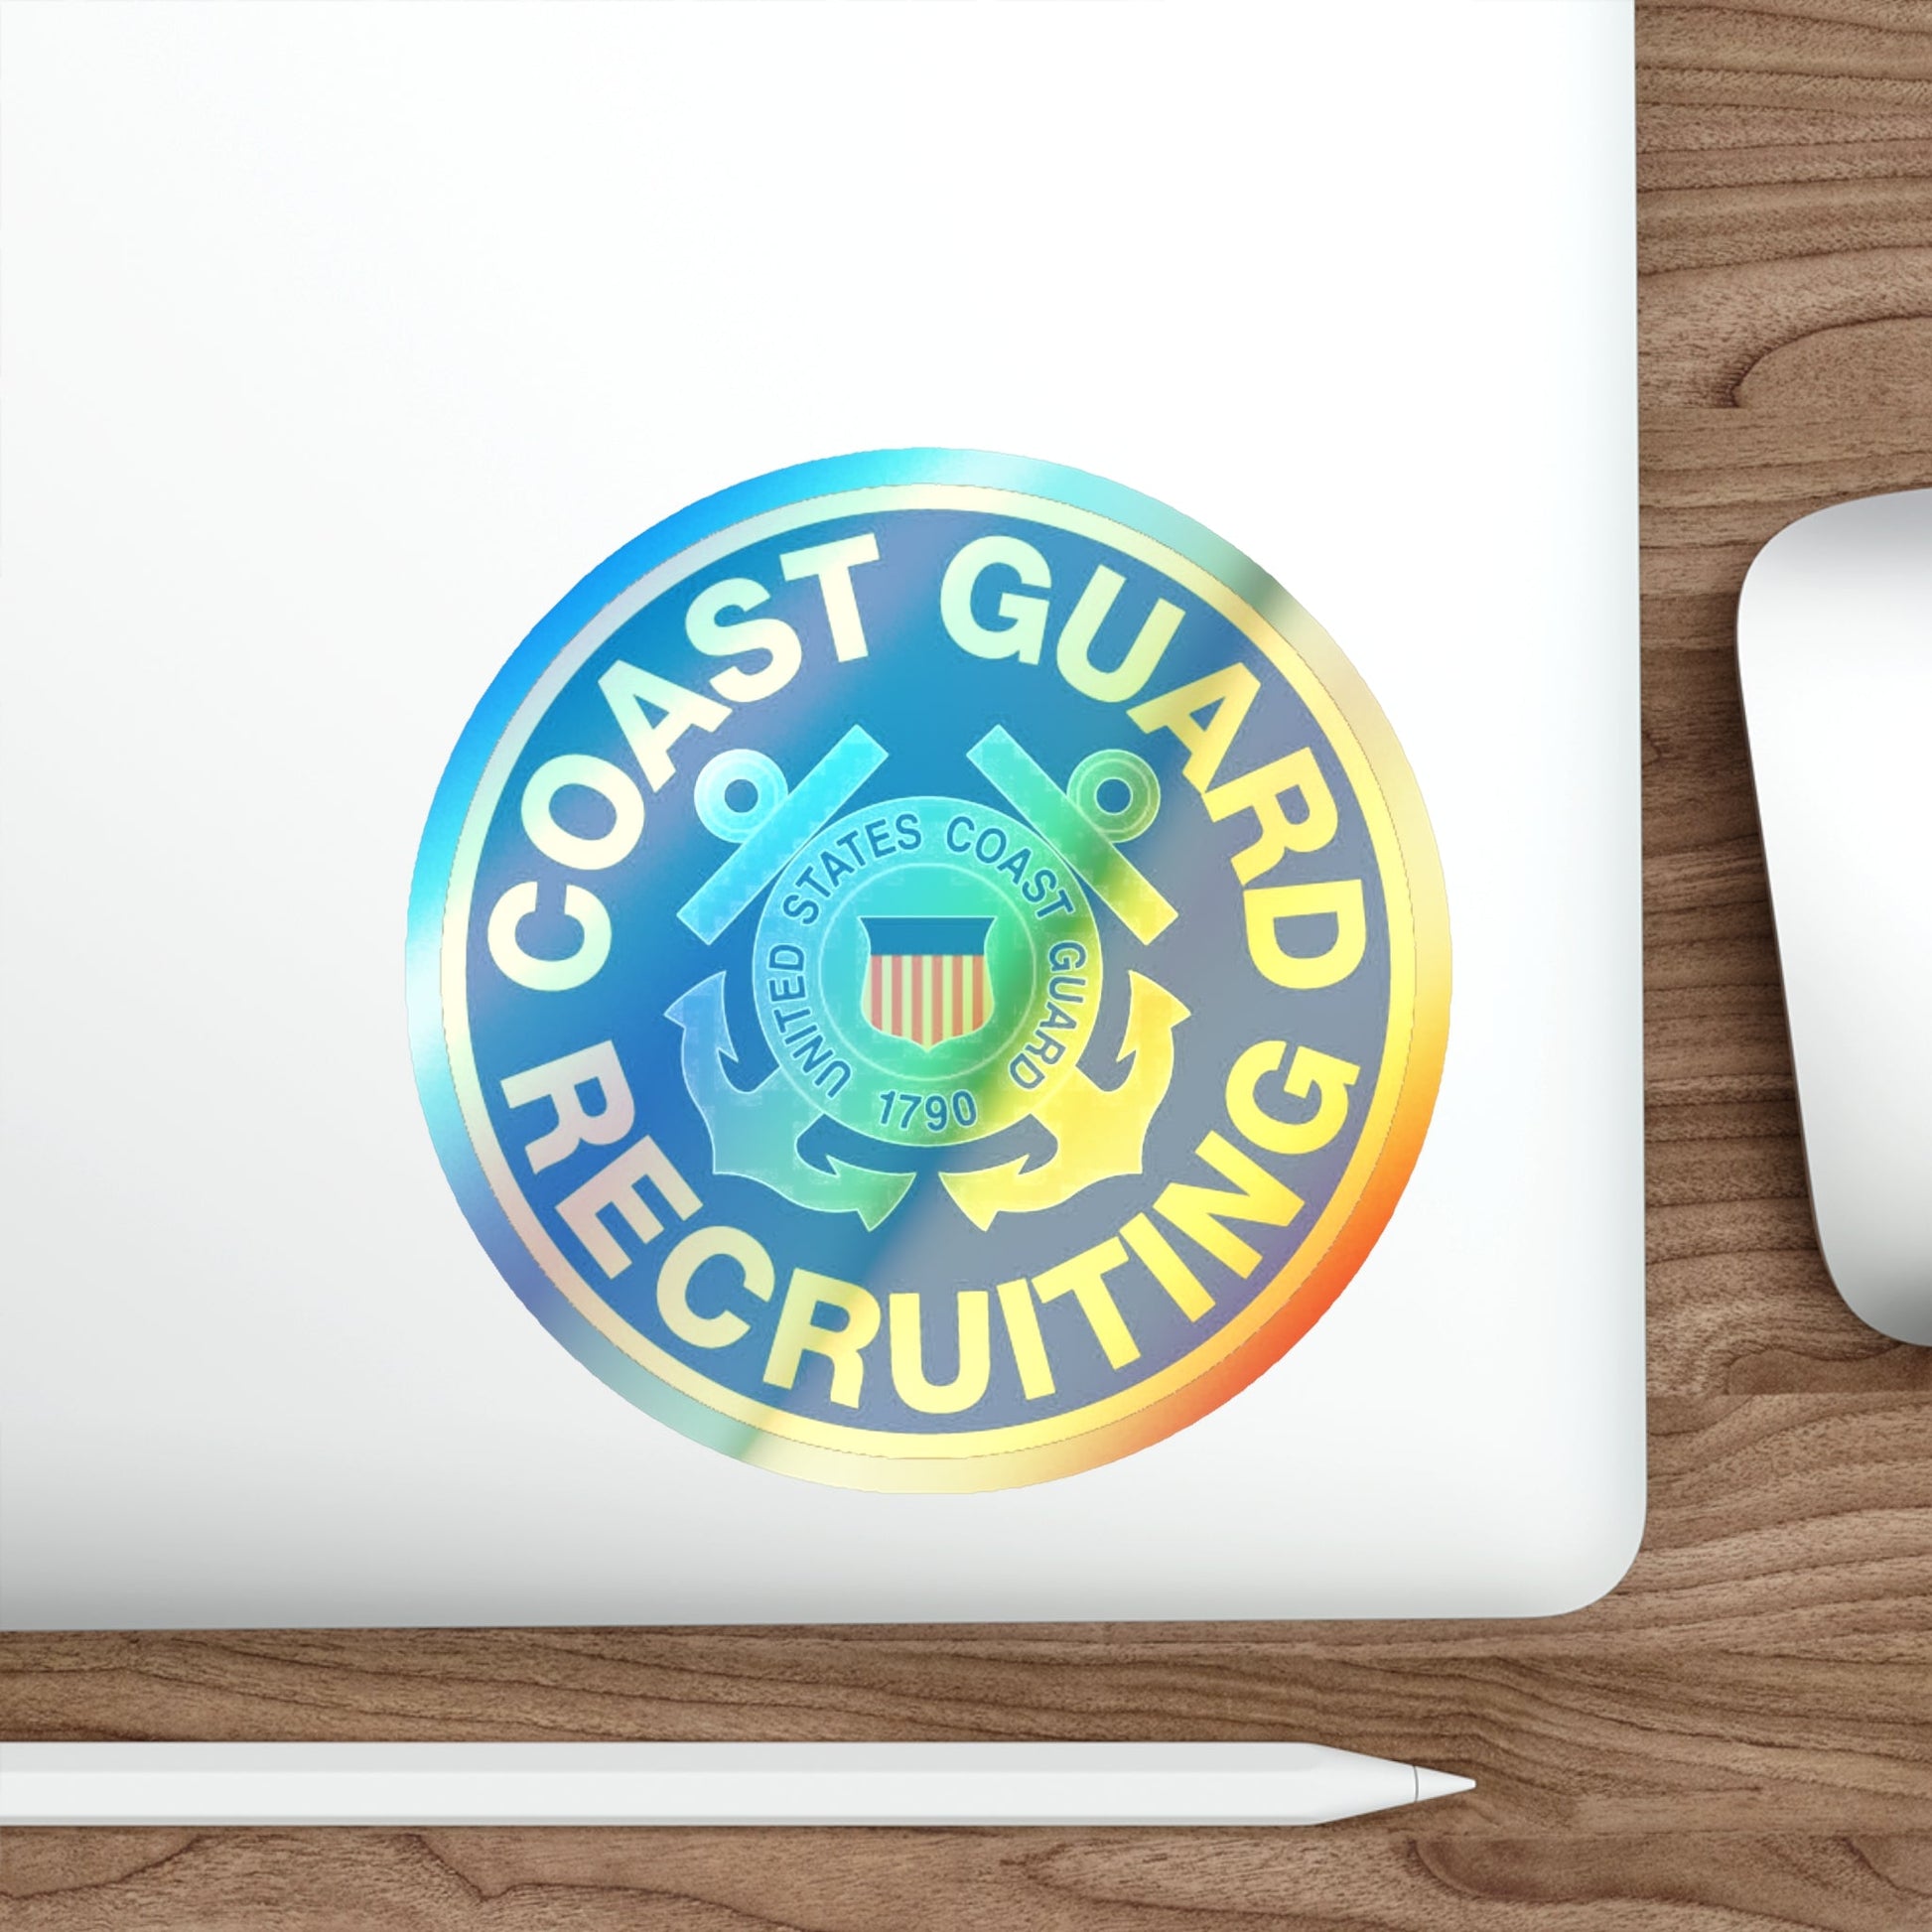 Coast Guard Recruiting (U.S. Coast Guard) Holographic STICKER Die-Cut Vinyl Decal-The Sticker Space